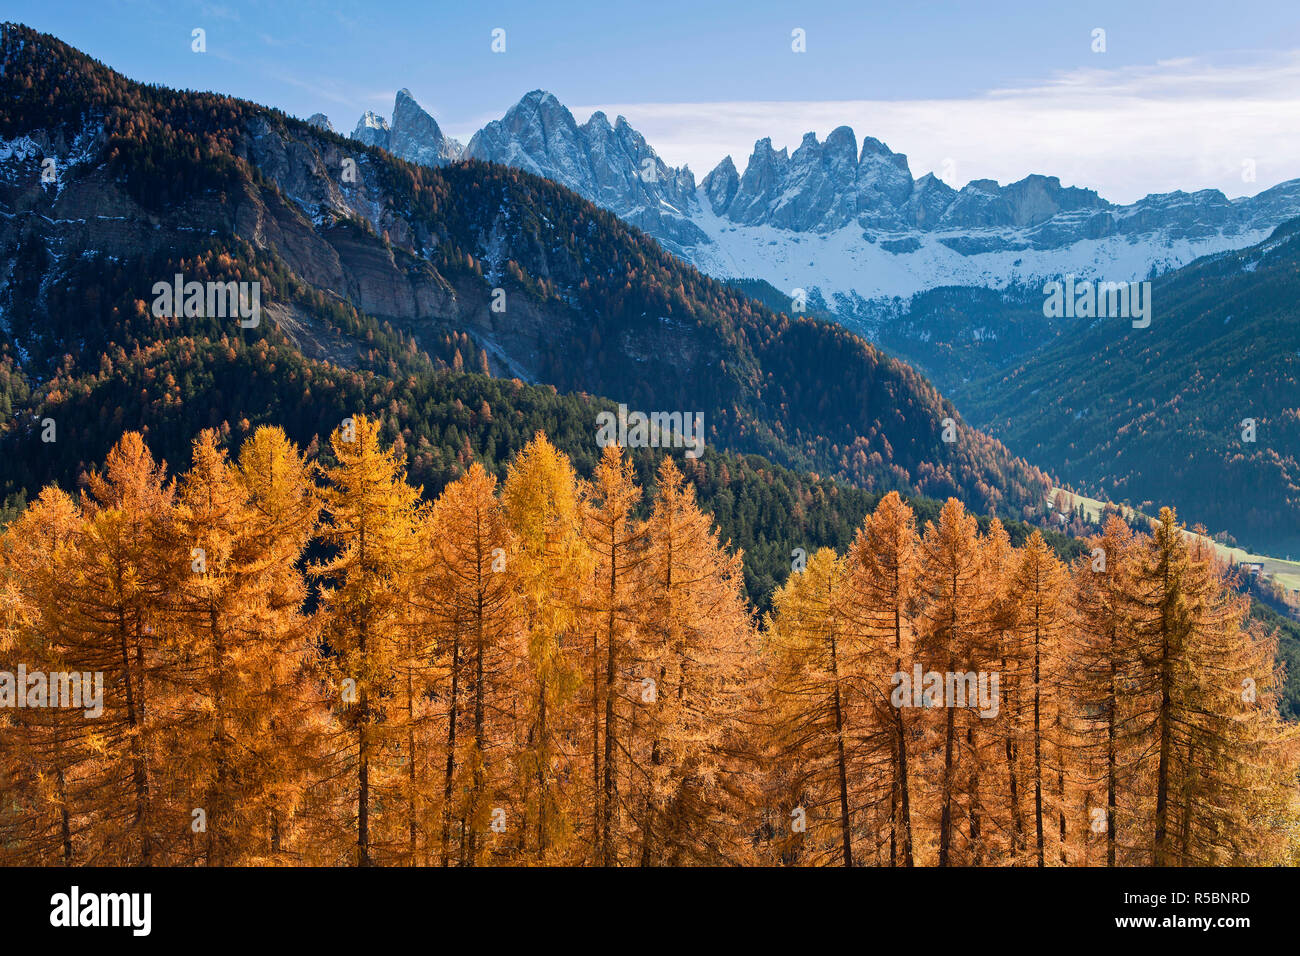 Mountains, Geisler Gruppe/ Geislerspitzen, Dolomites, Trentino-Alto Adige, Italy Stock Photo